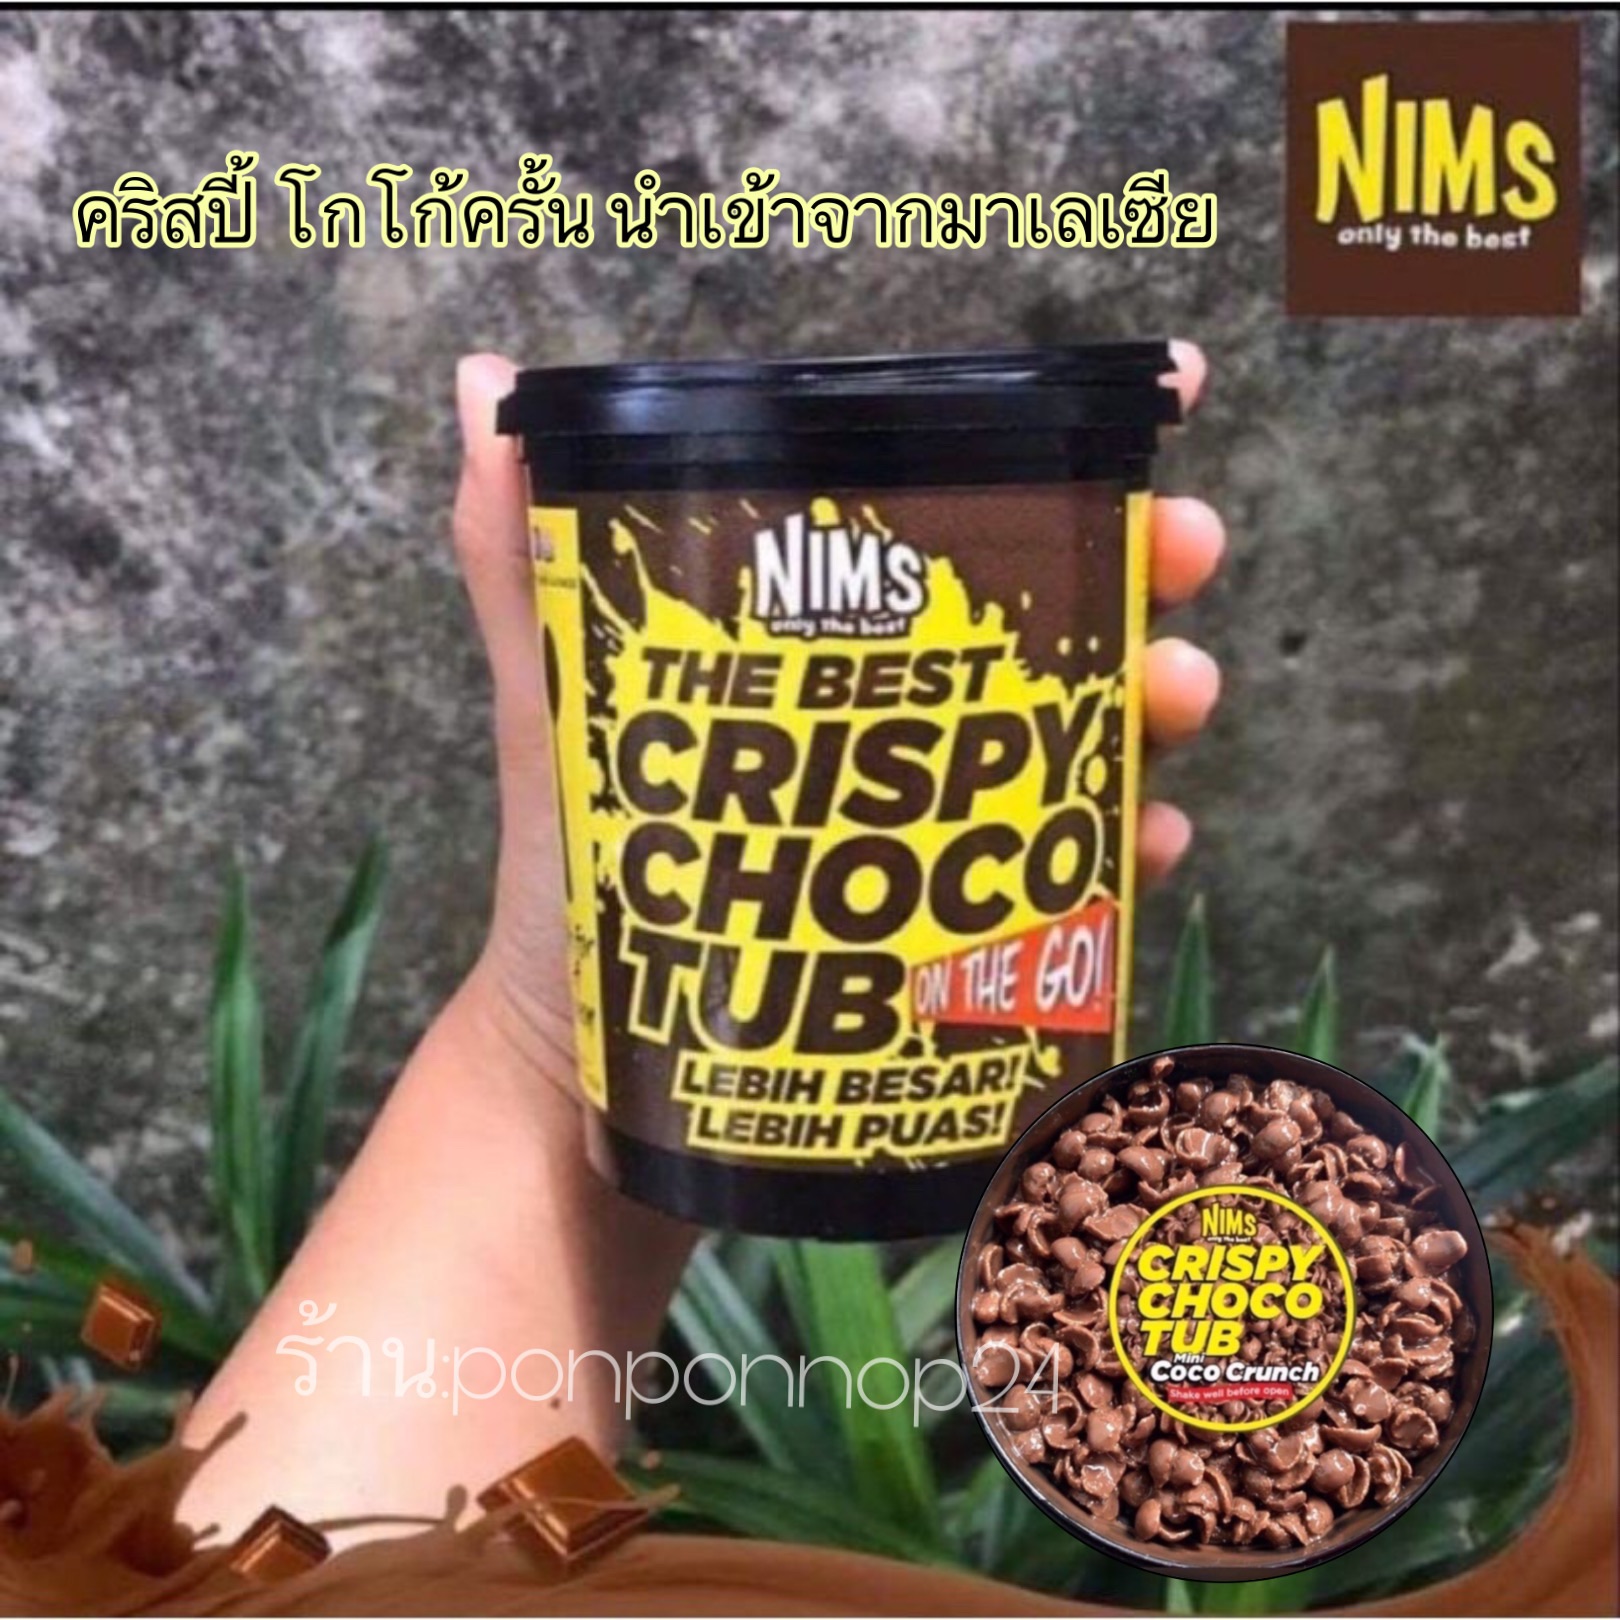 NIMS คริสปี้ ช็อกโกแลต 🍫จัดส่งเร็ว มีของแถมน่ารักๆ🚚 CRISPY CHOCO TUB ขนมนำเข้าจากมาเลเซียโกโก้ครันแสนอร่อย 🔥มาแรงในตอนนี้🔥สินค้านำเข้าของมาเลเซีย ‼️อร่อยมากเอาใจคนชอบ ช็อคโกแลต 🔥. ท้ายให้ลองถูกที่สุด🔥